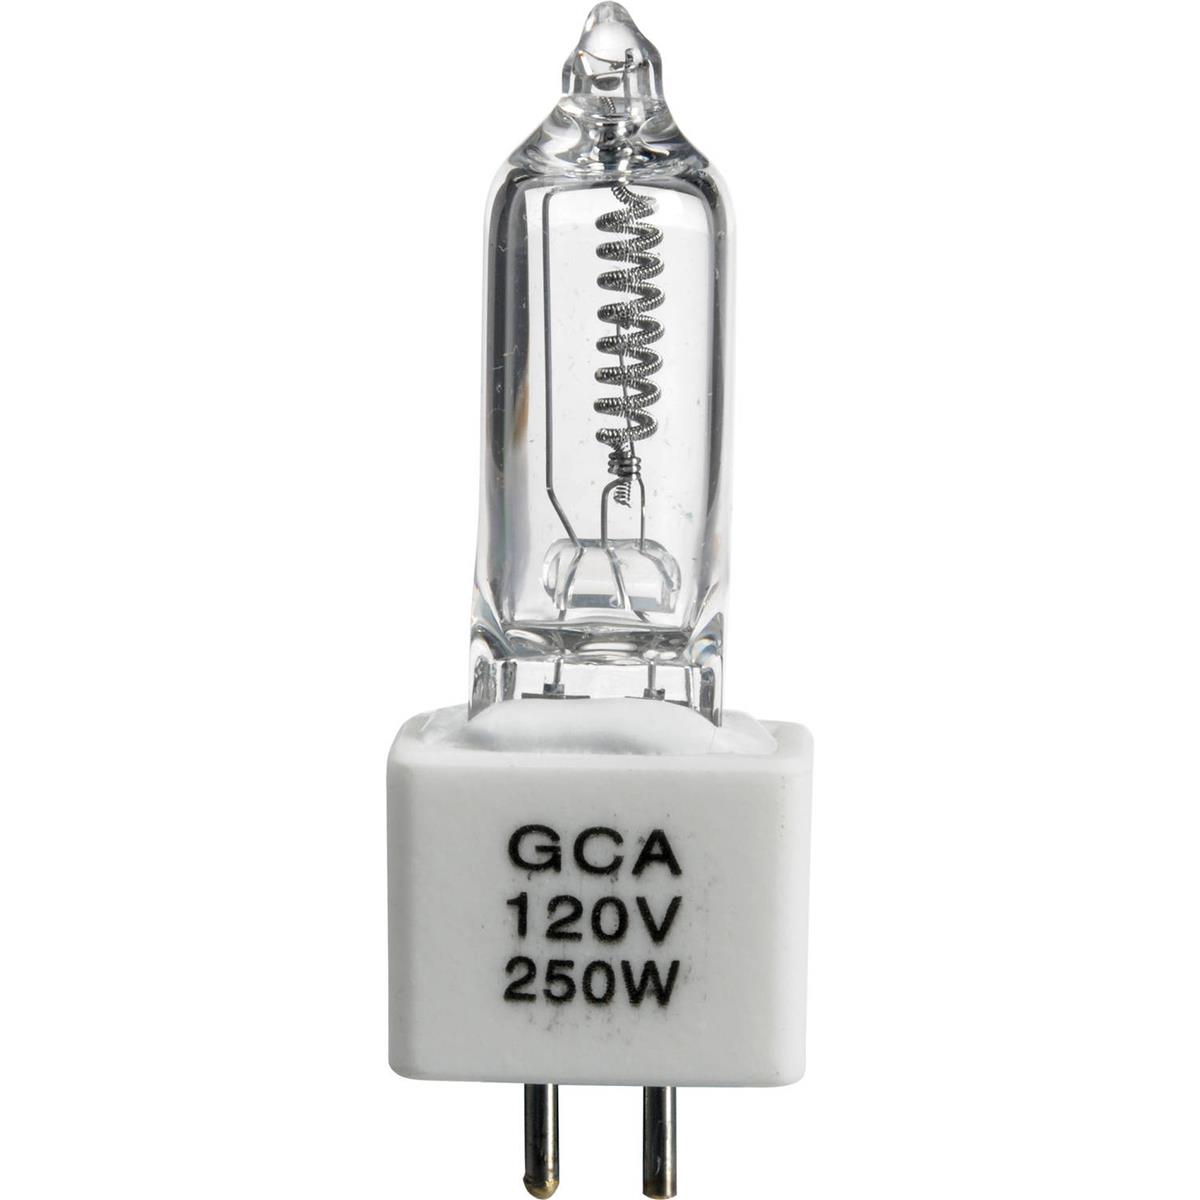 Лампа Видеолампа GCA, 250 Вт/120 В #1000647